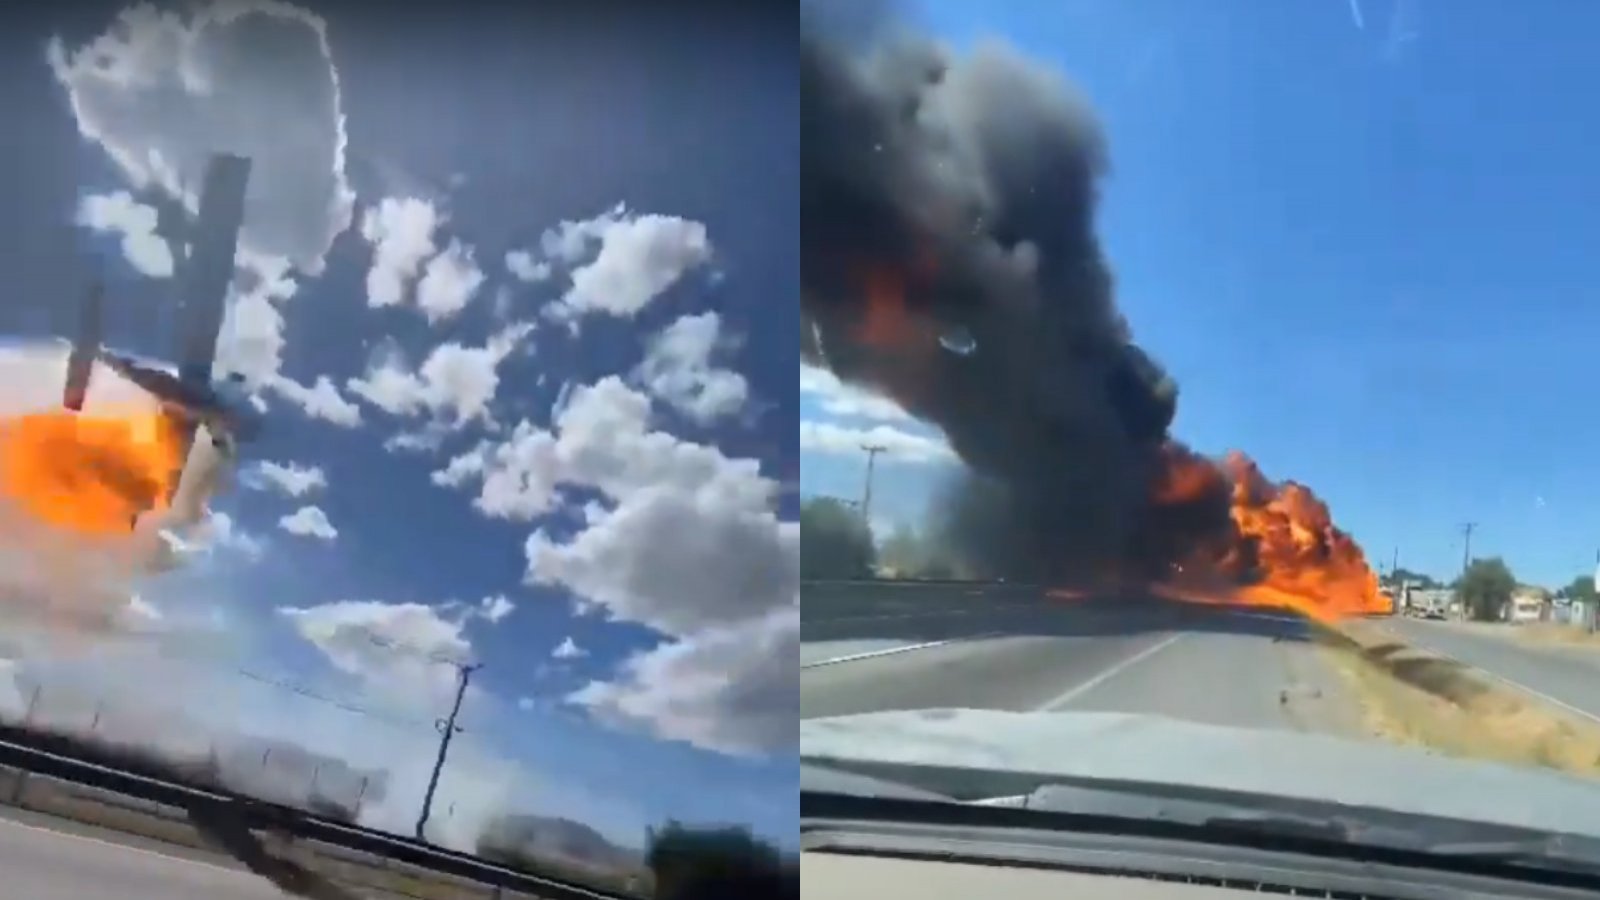 Accidente en Talca: Estos son los videos testimoniales de avioneta estrellada en Ruta 5